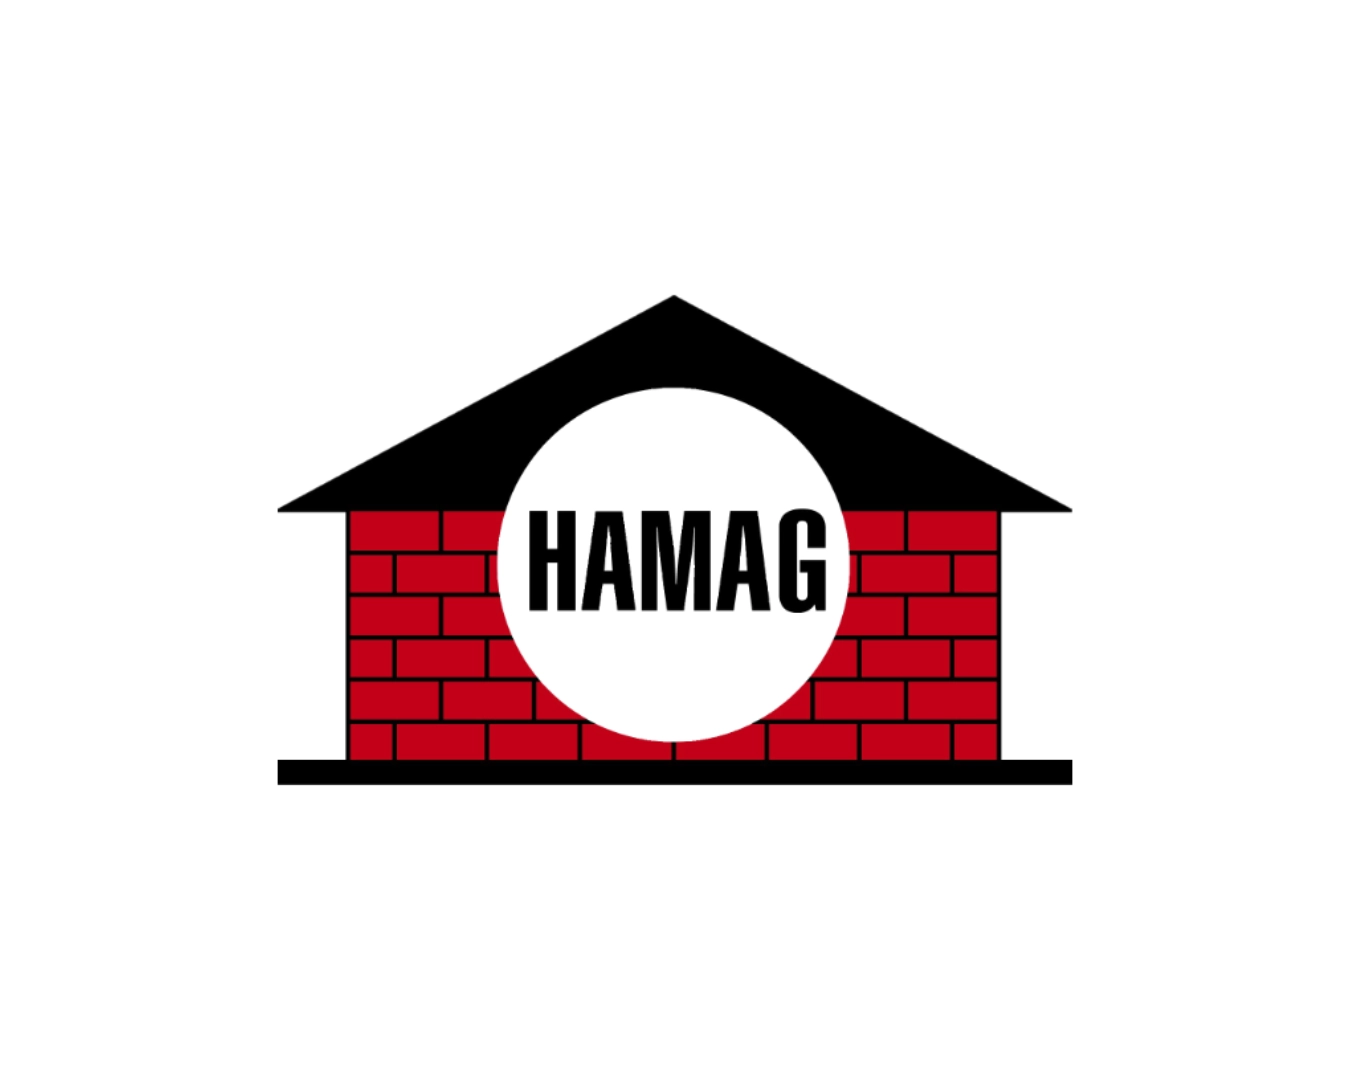 HAMAG Nastätten Logo